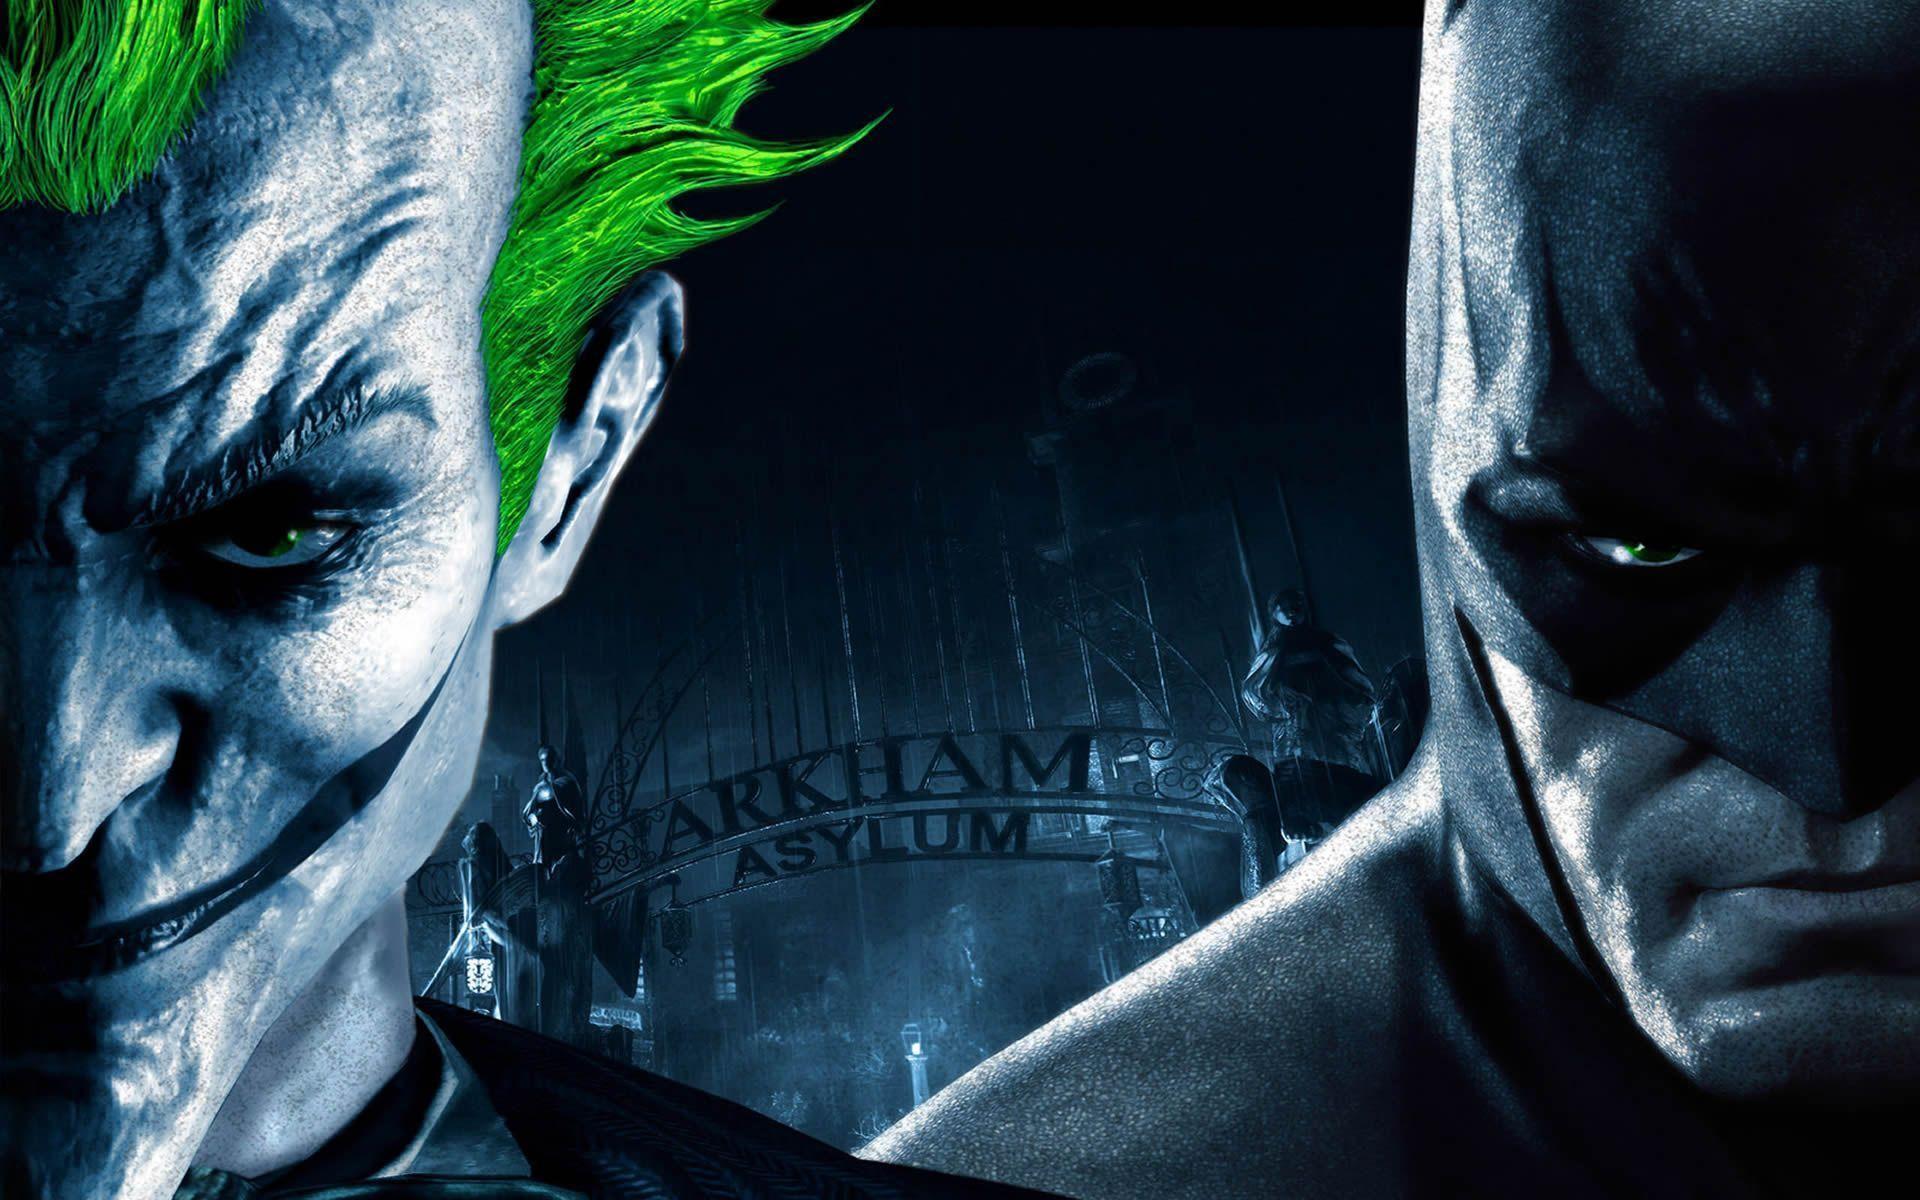 Batman Arkham Asylum Joker